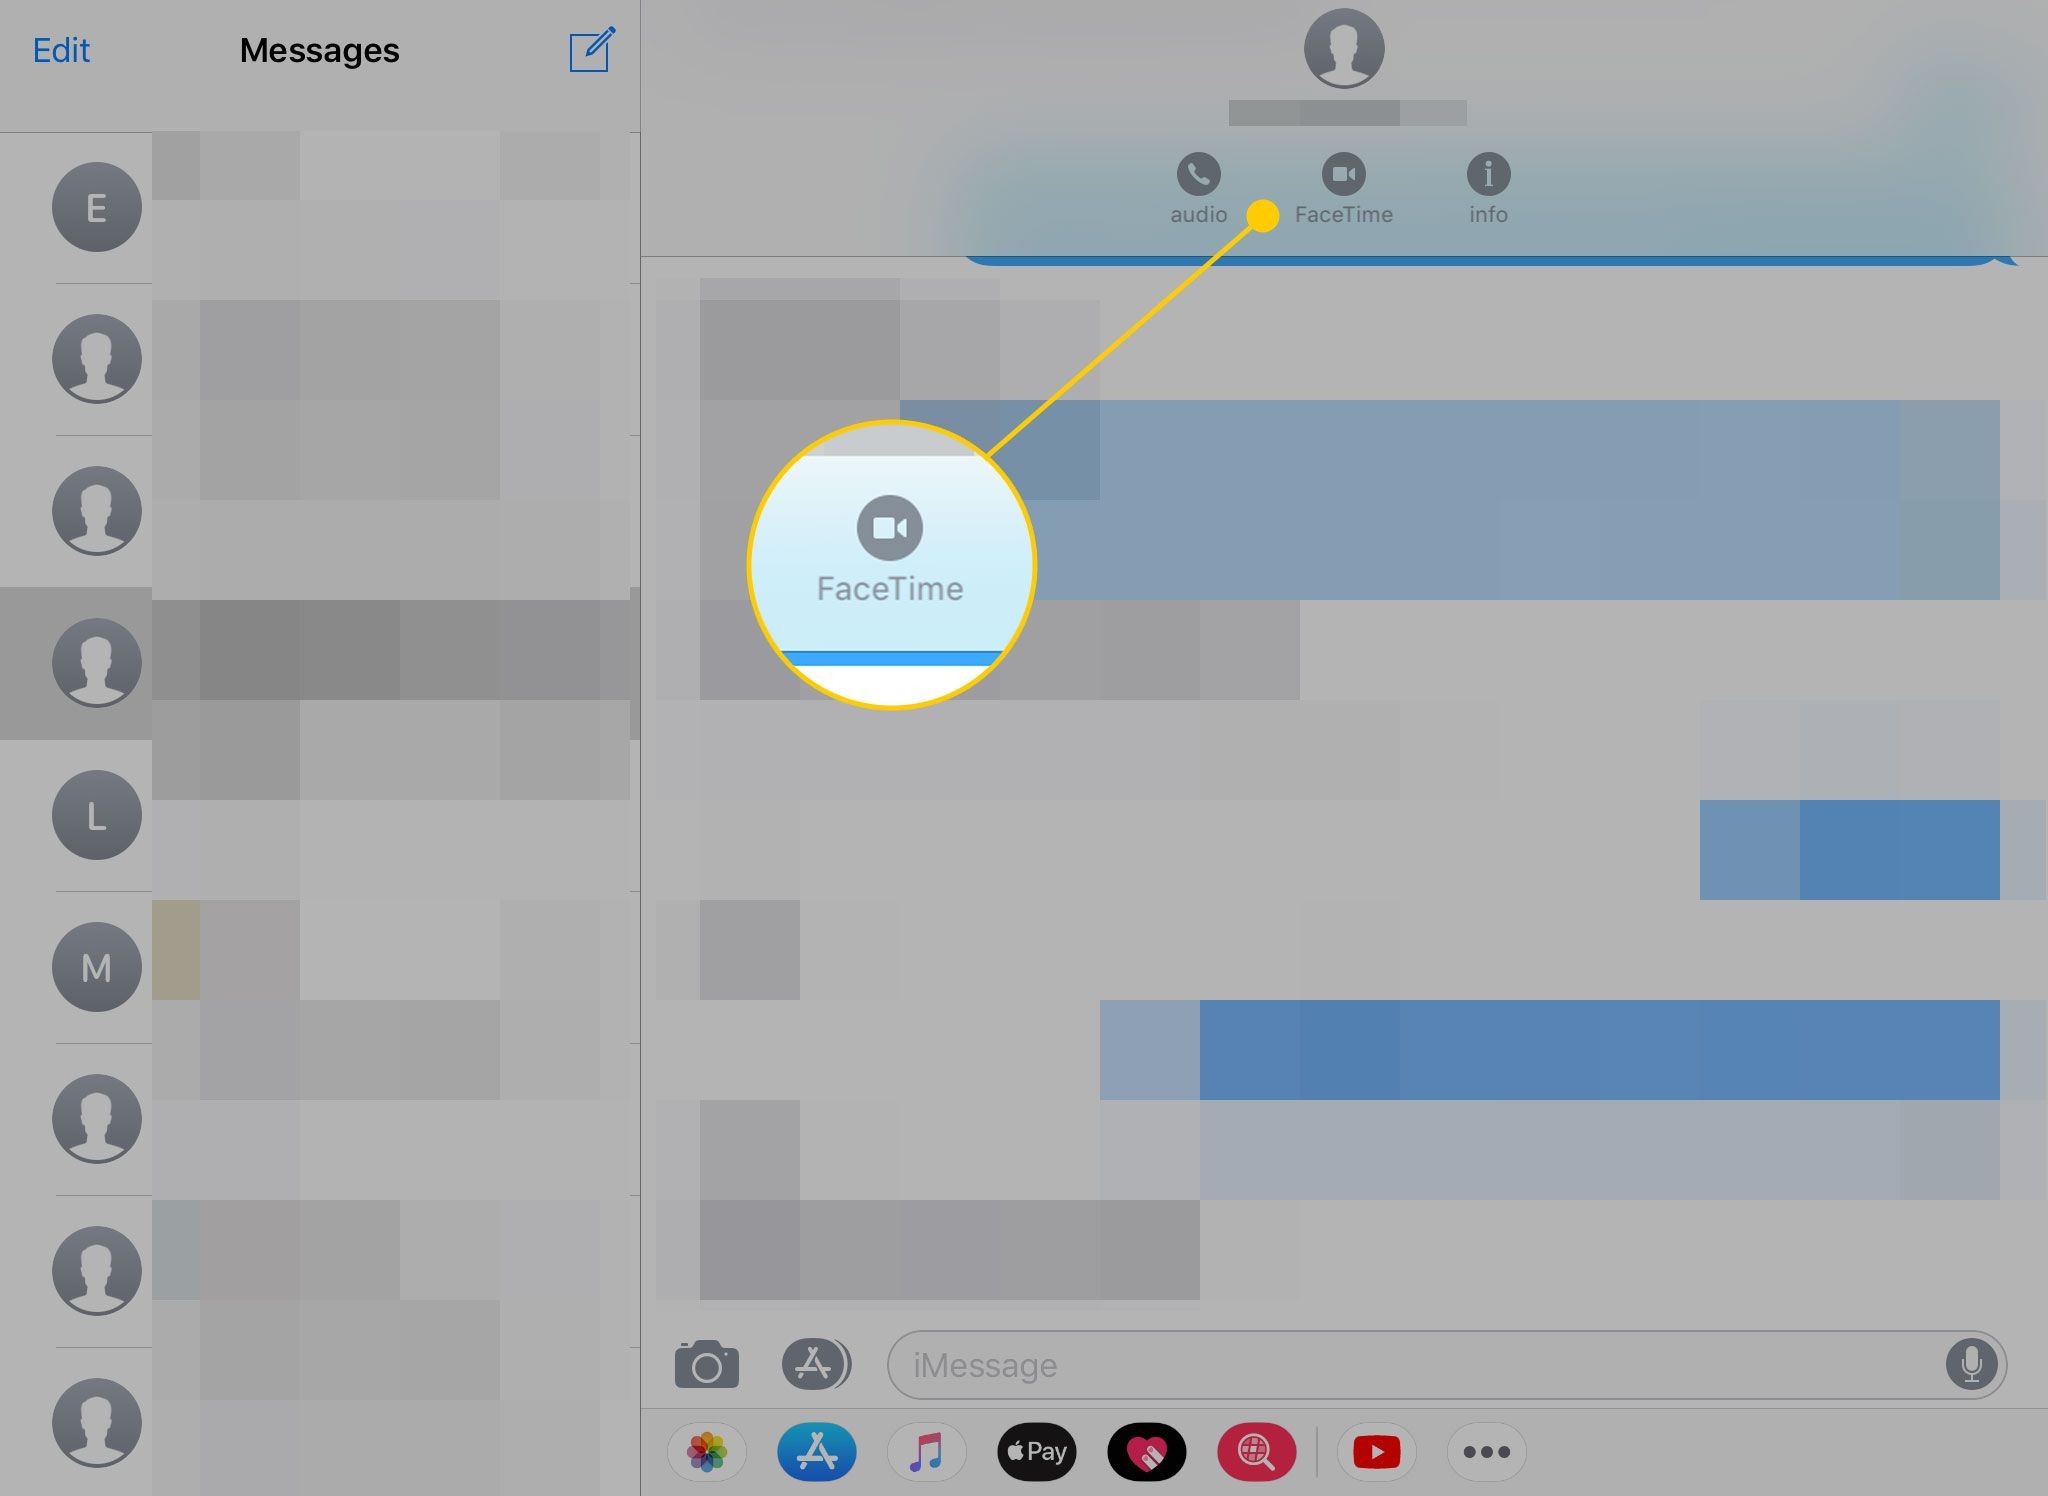 Сообщения на iPad с выделенным значком FaceTime